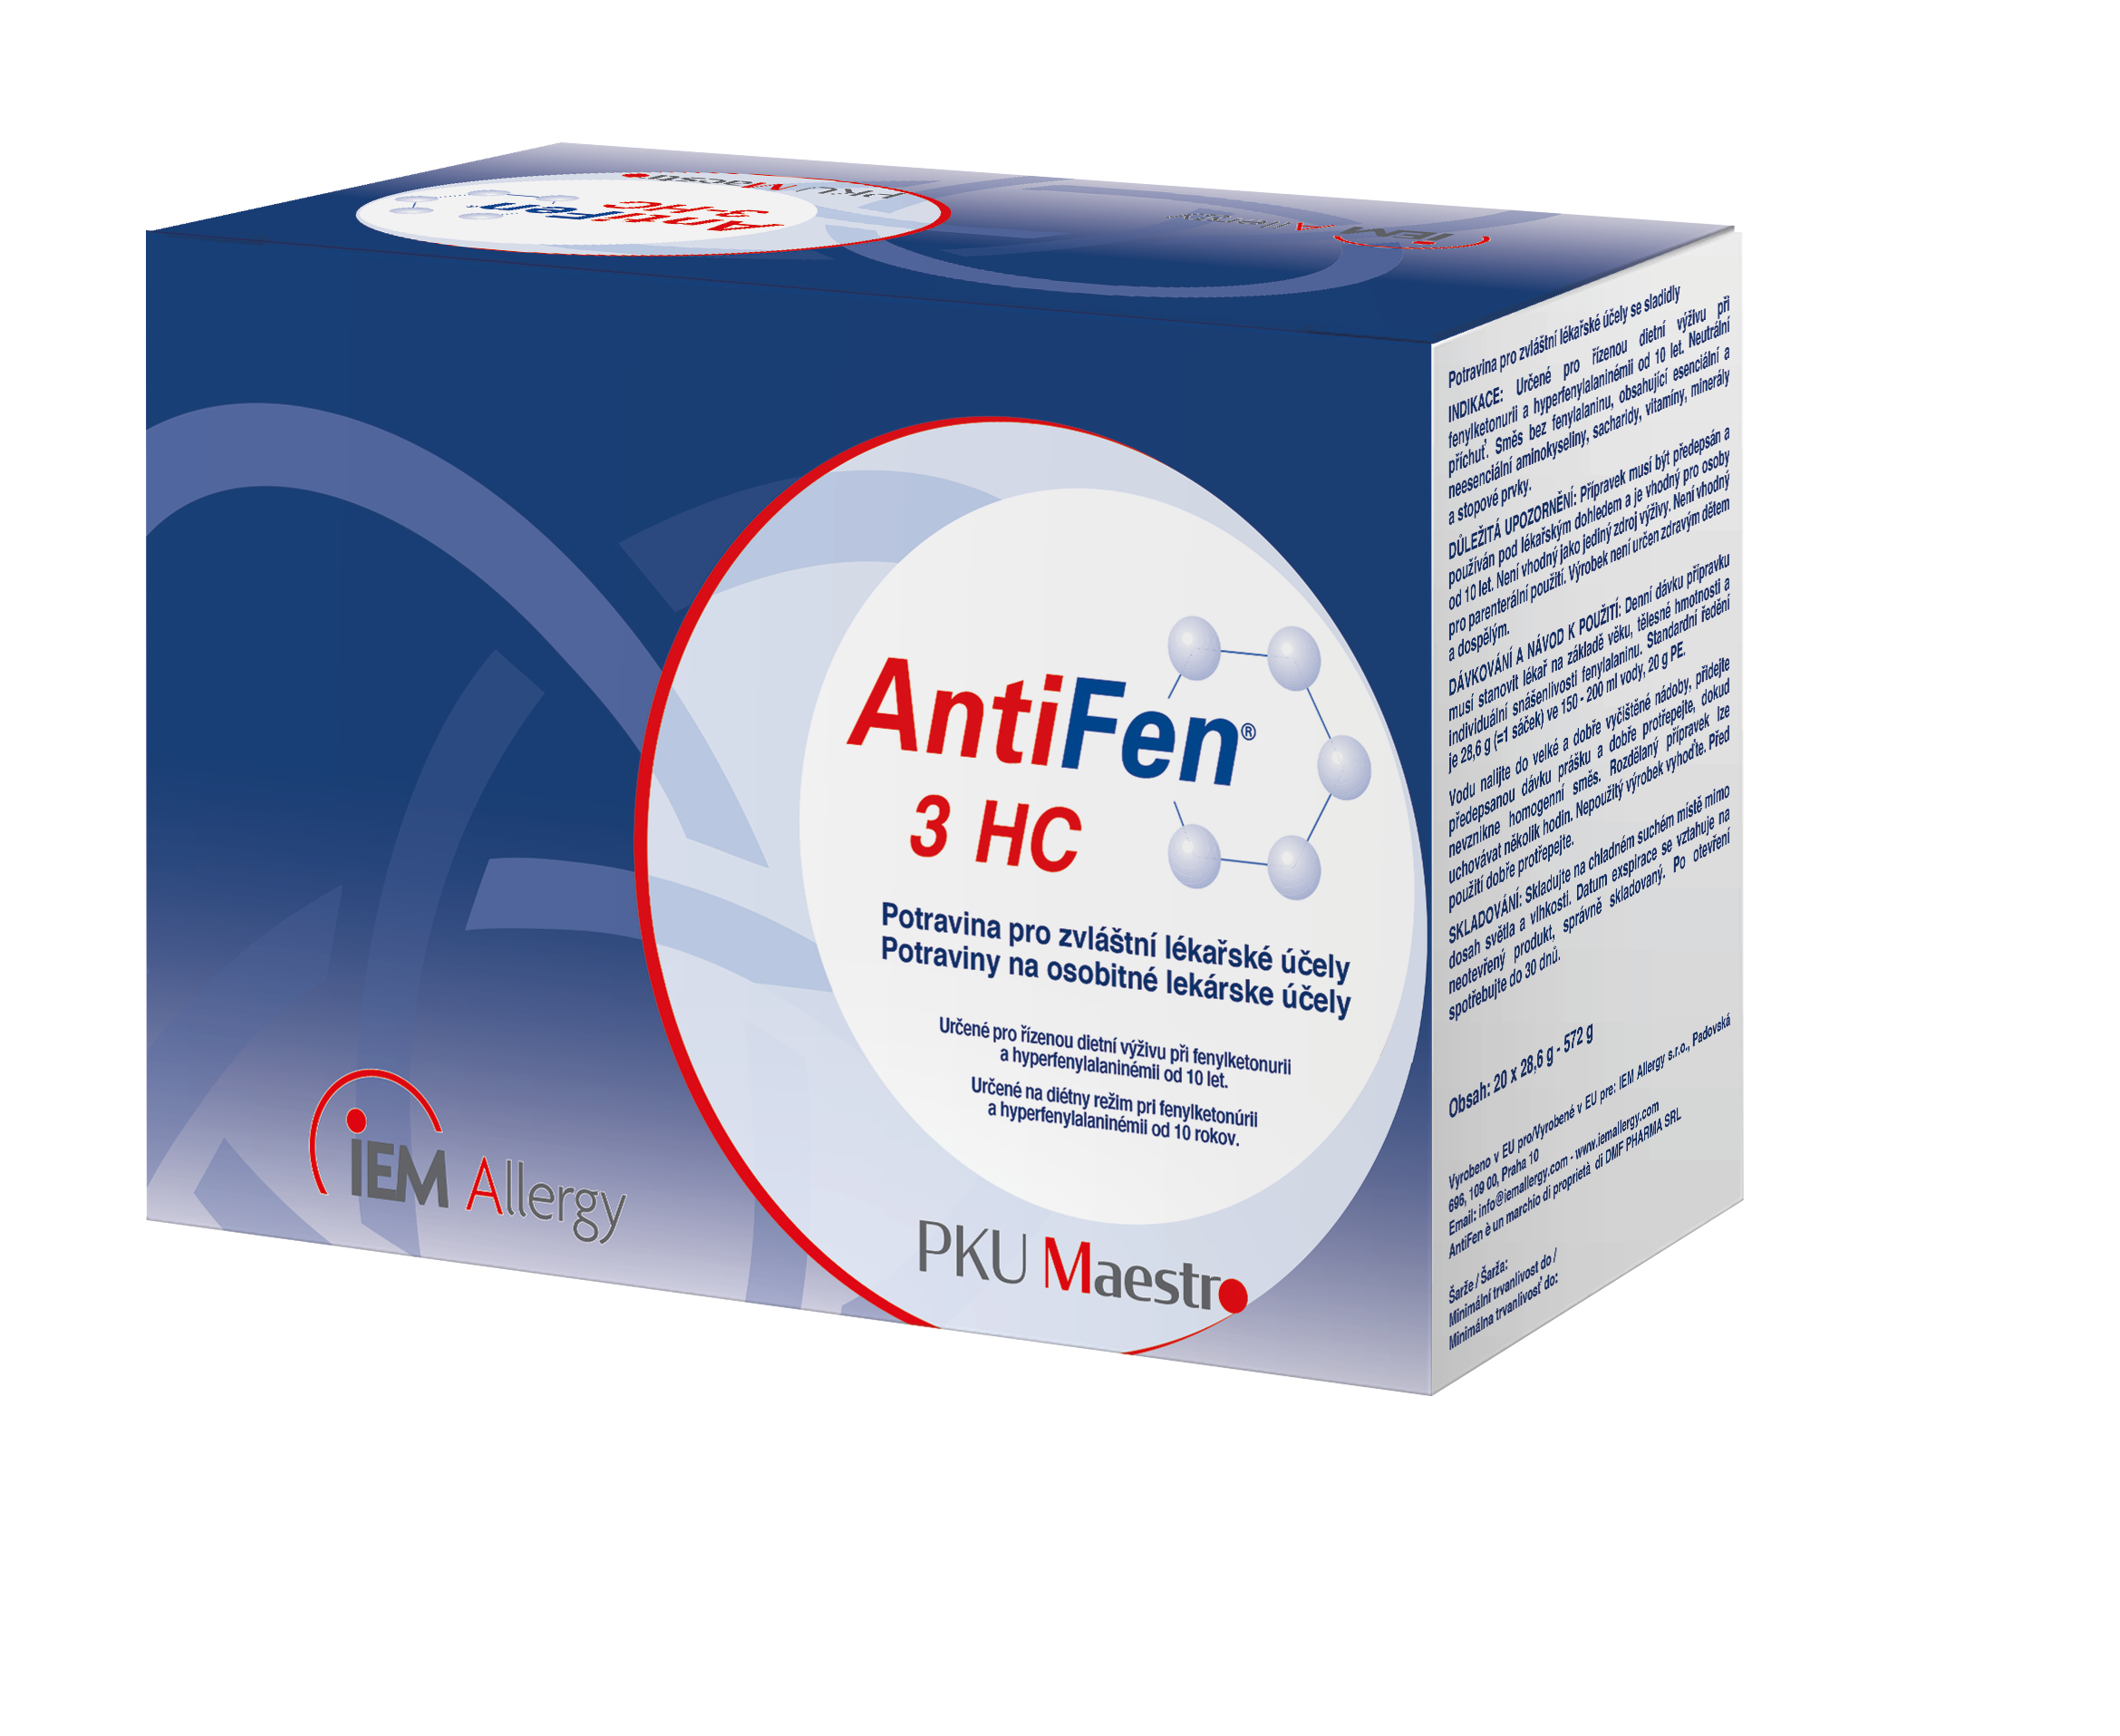 AntiFen 3 HC